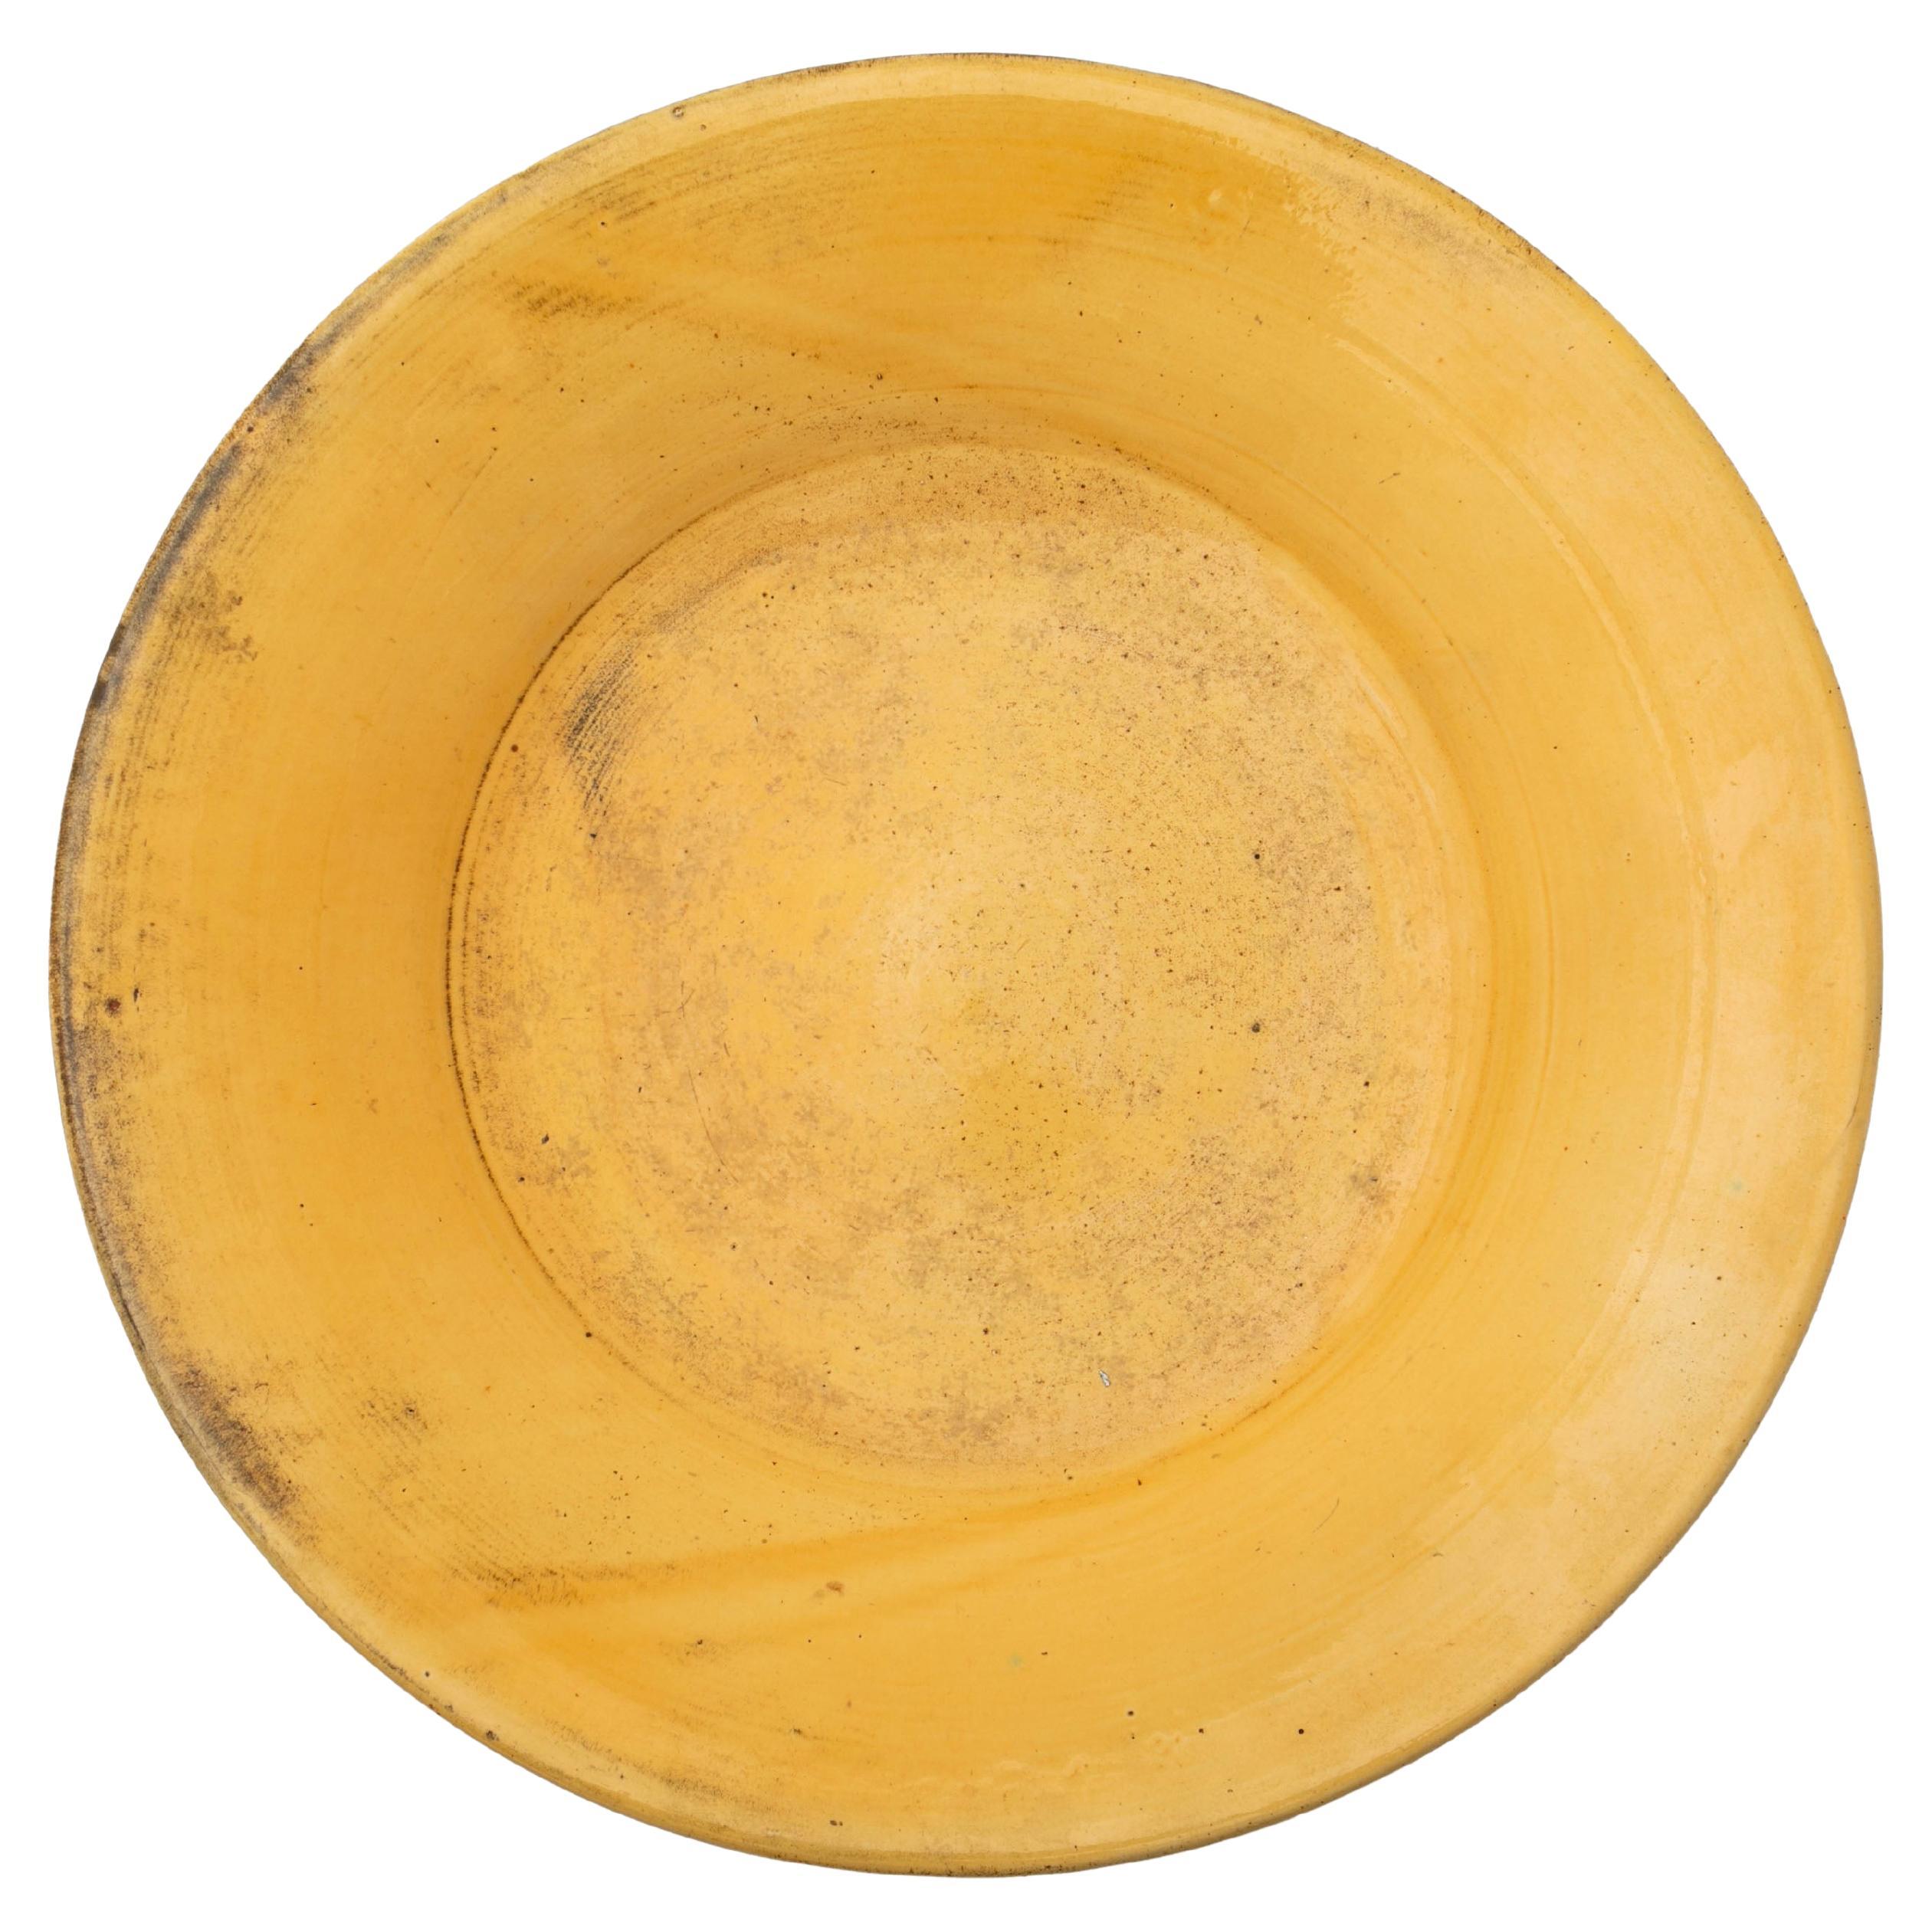 Kähler Large Dish in Glazed Stoneware